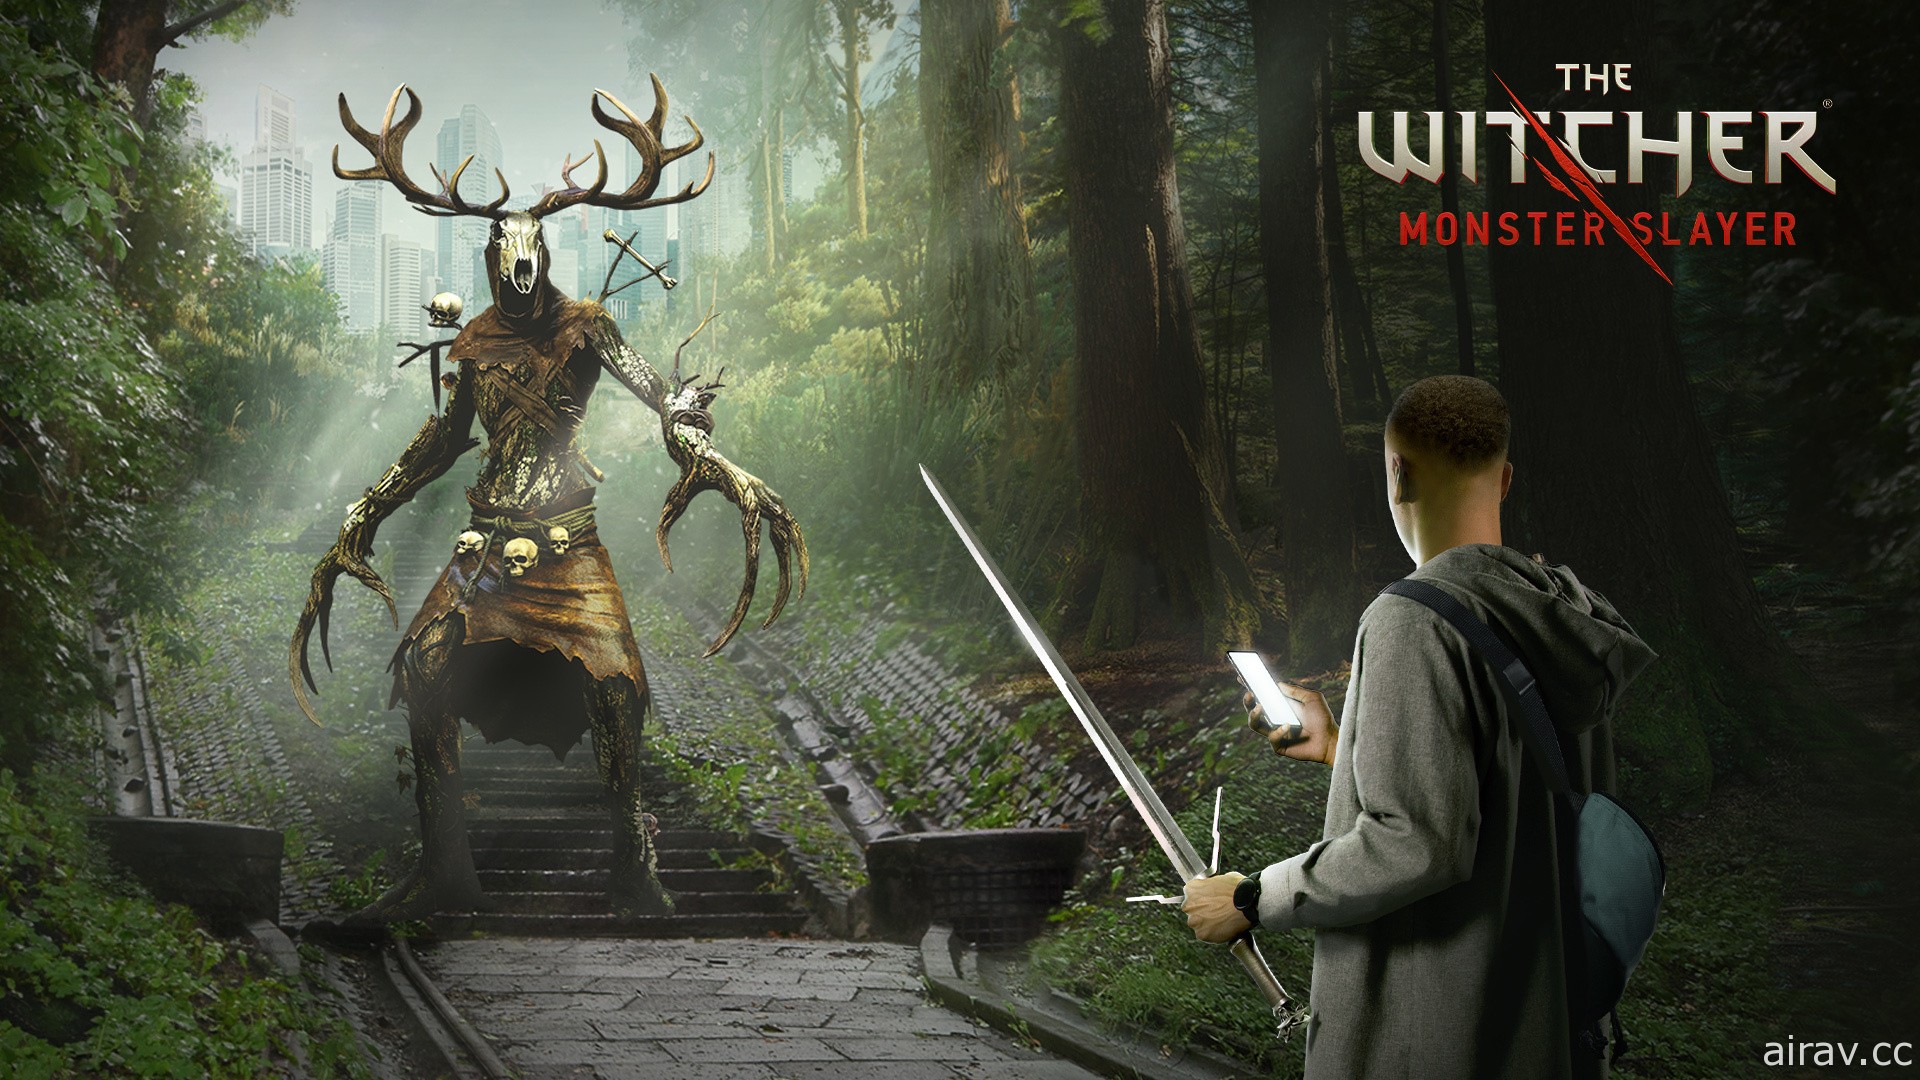 《巫师》系列改编 AR 新作《巫师：怪物杀手》上市 于现实世界狩猎奇幻怪物